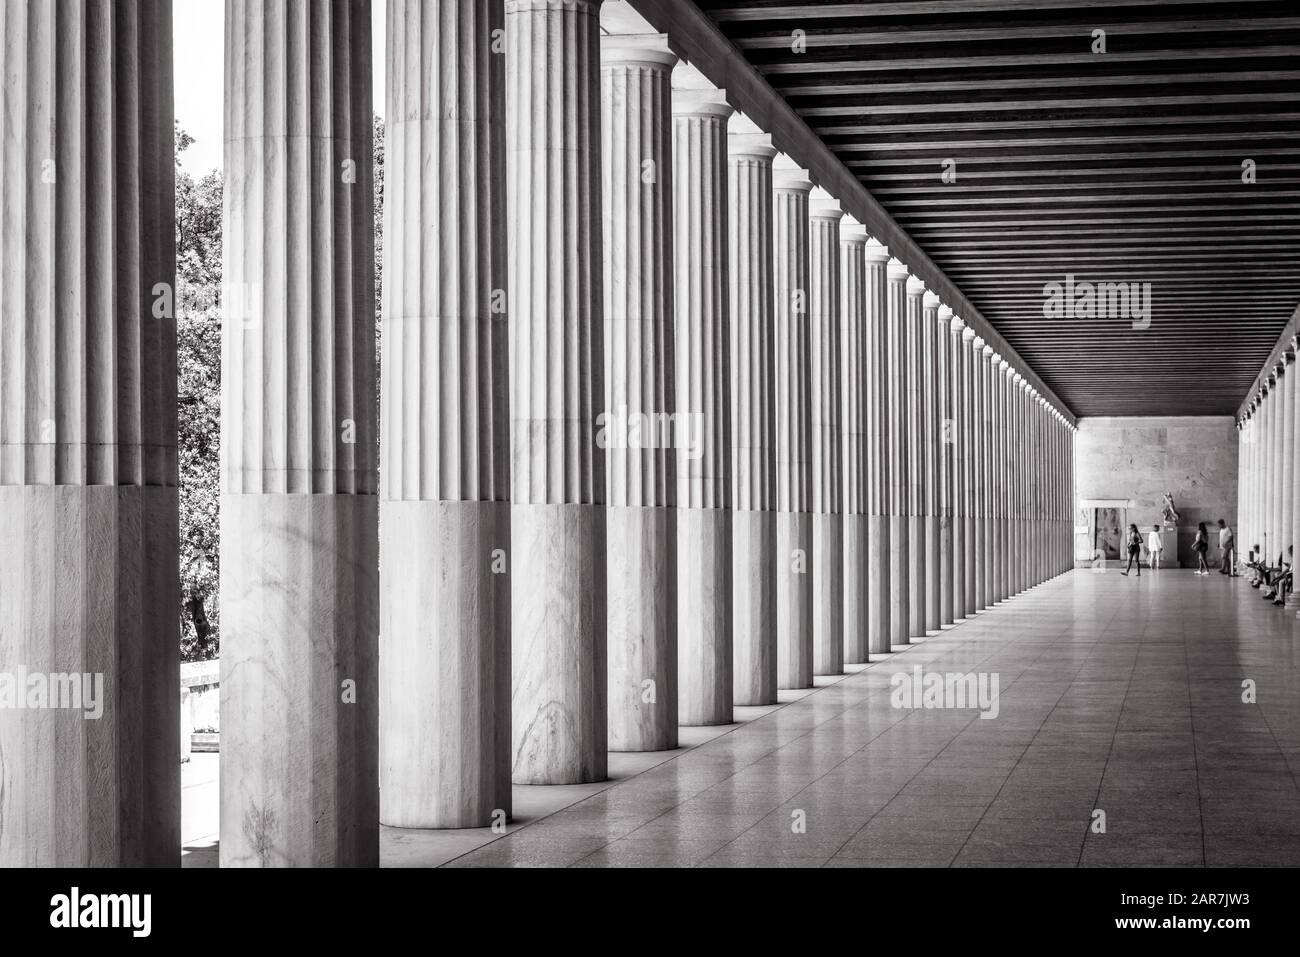 STOA von Attalos in Agora, Athen, Griechenland. Es ist eine der wichtigsten Touristenattraktionen Athens. Panoramasicht auf Stoa-Säulen mit Perspektive. Histor Stockfoto